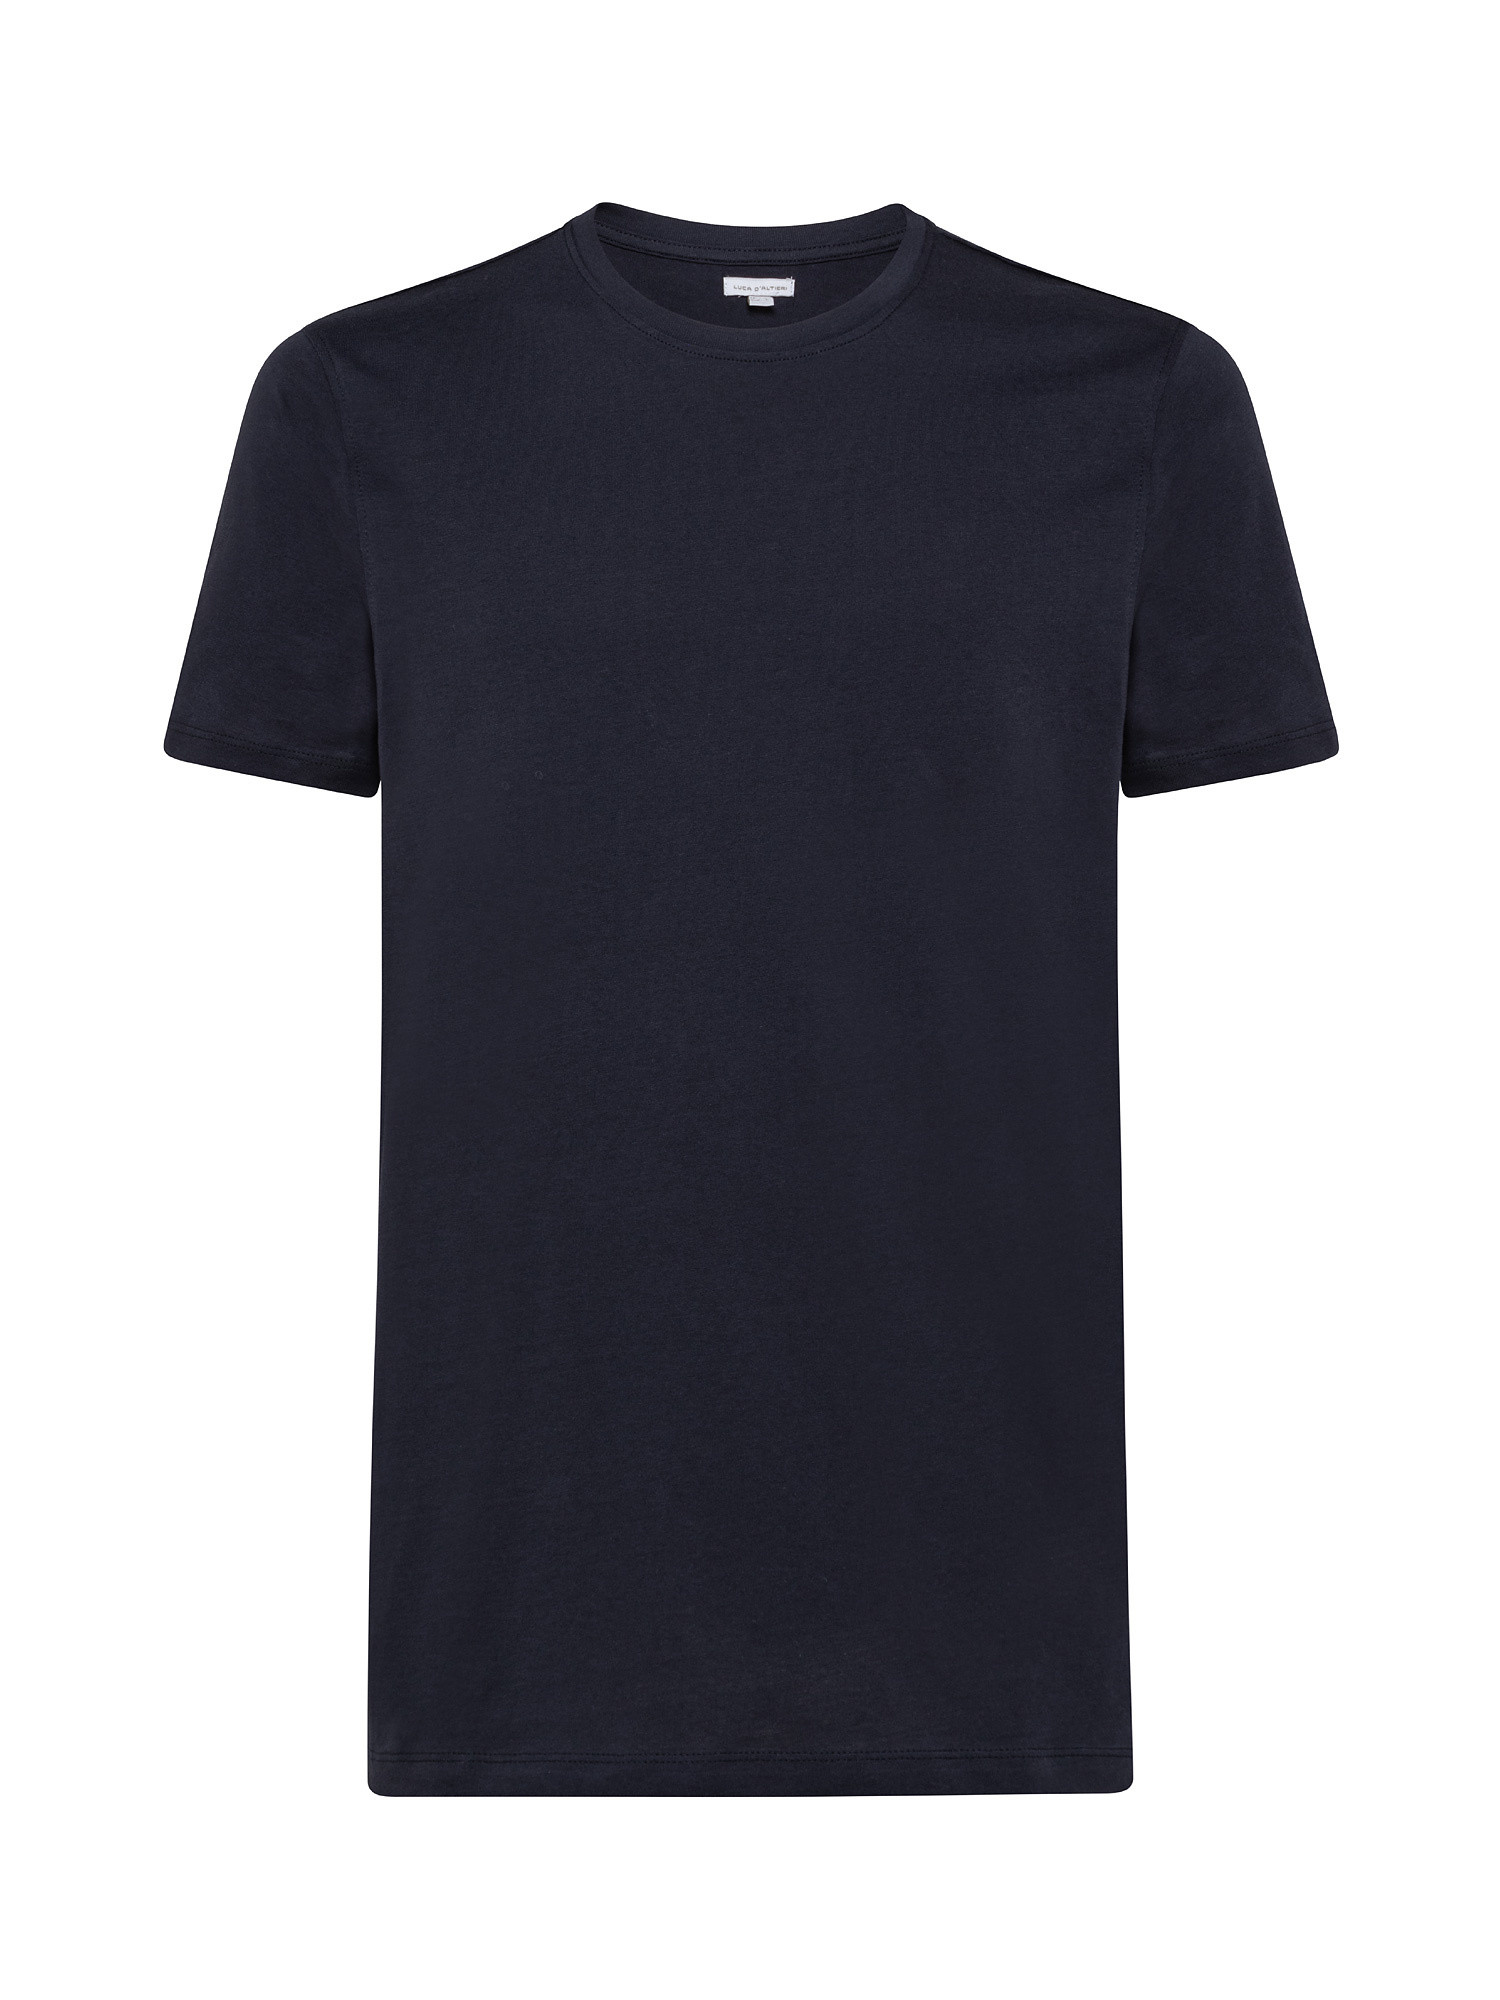 T-shirt girocollo cotone supima tinta unita, Blu, large